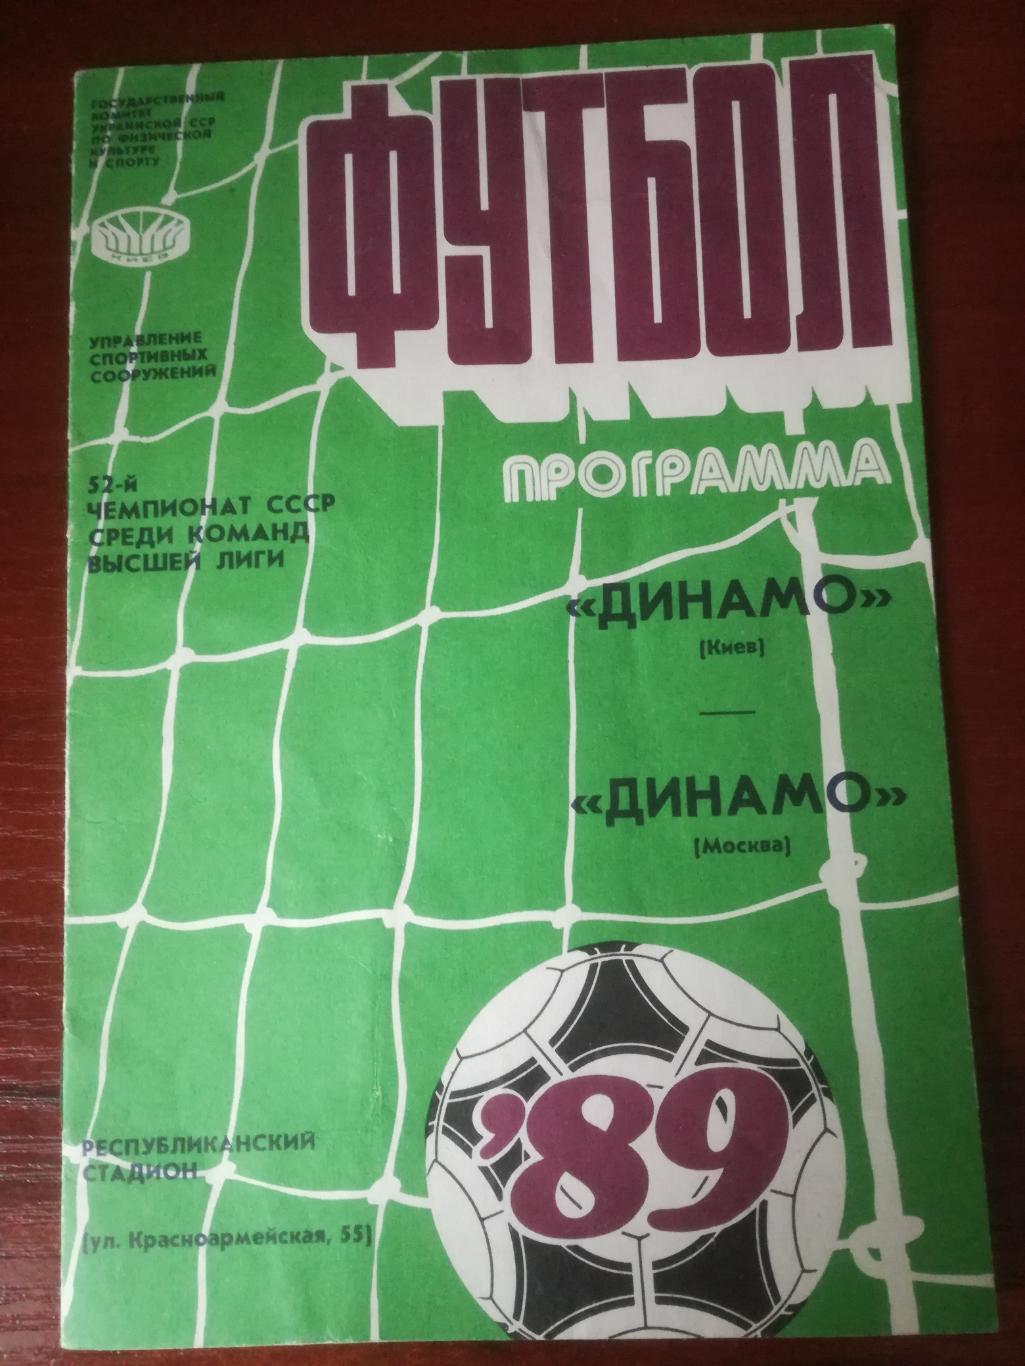 Динамо Киев - Динамо Москва, 25.07.1989.